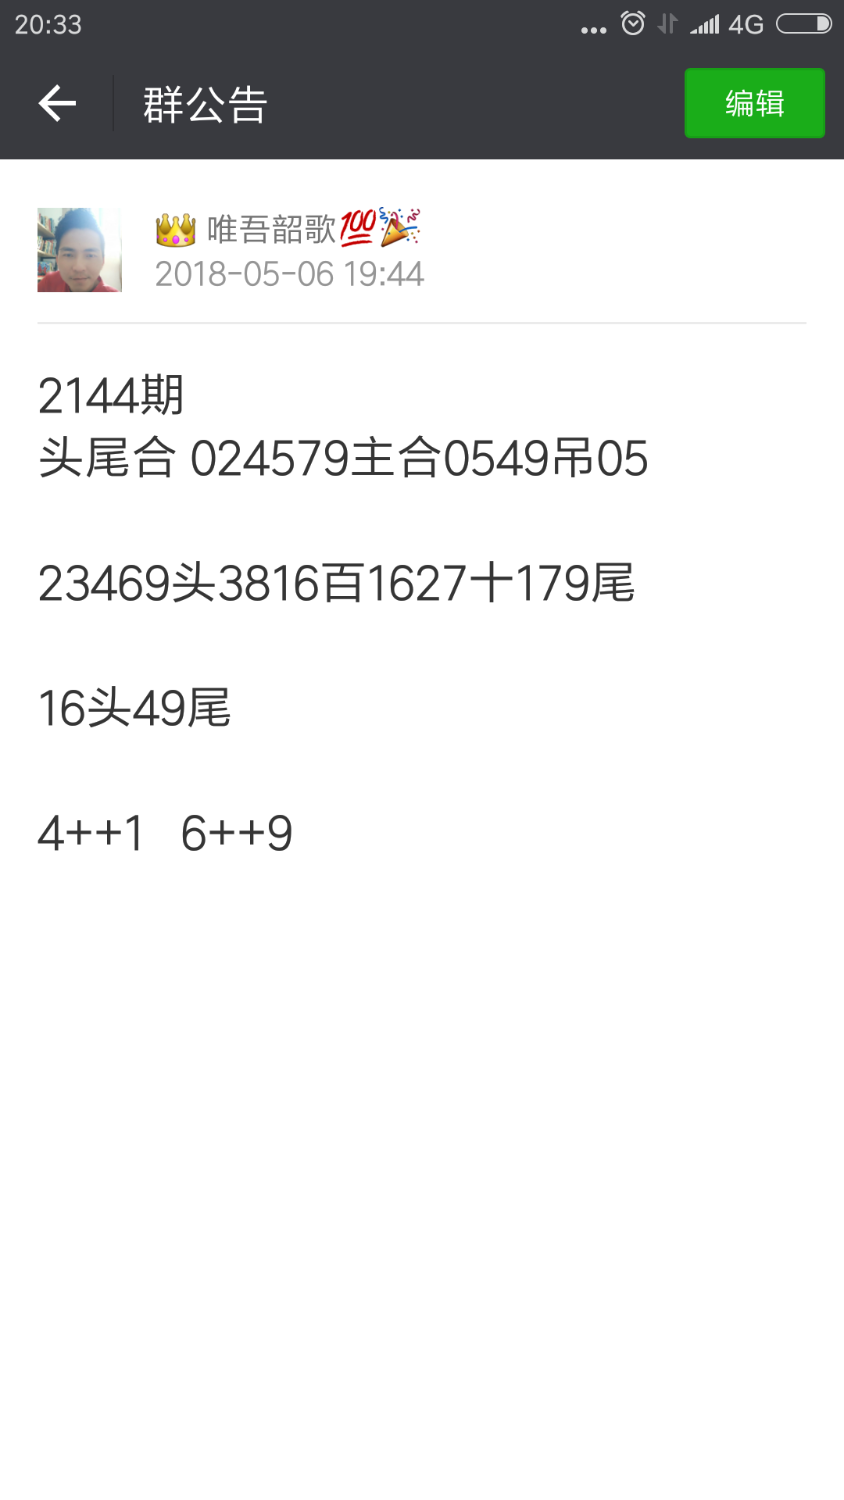 Screenshot_2018-05-06-20-33-17-183_com.tencent.mm.png